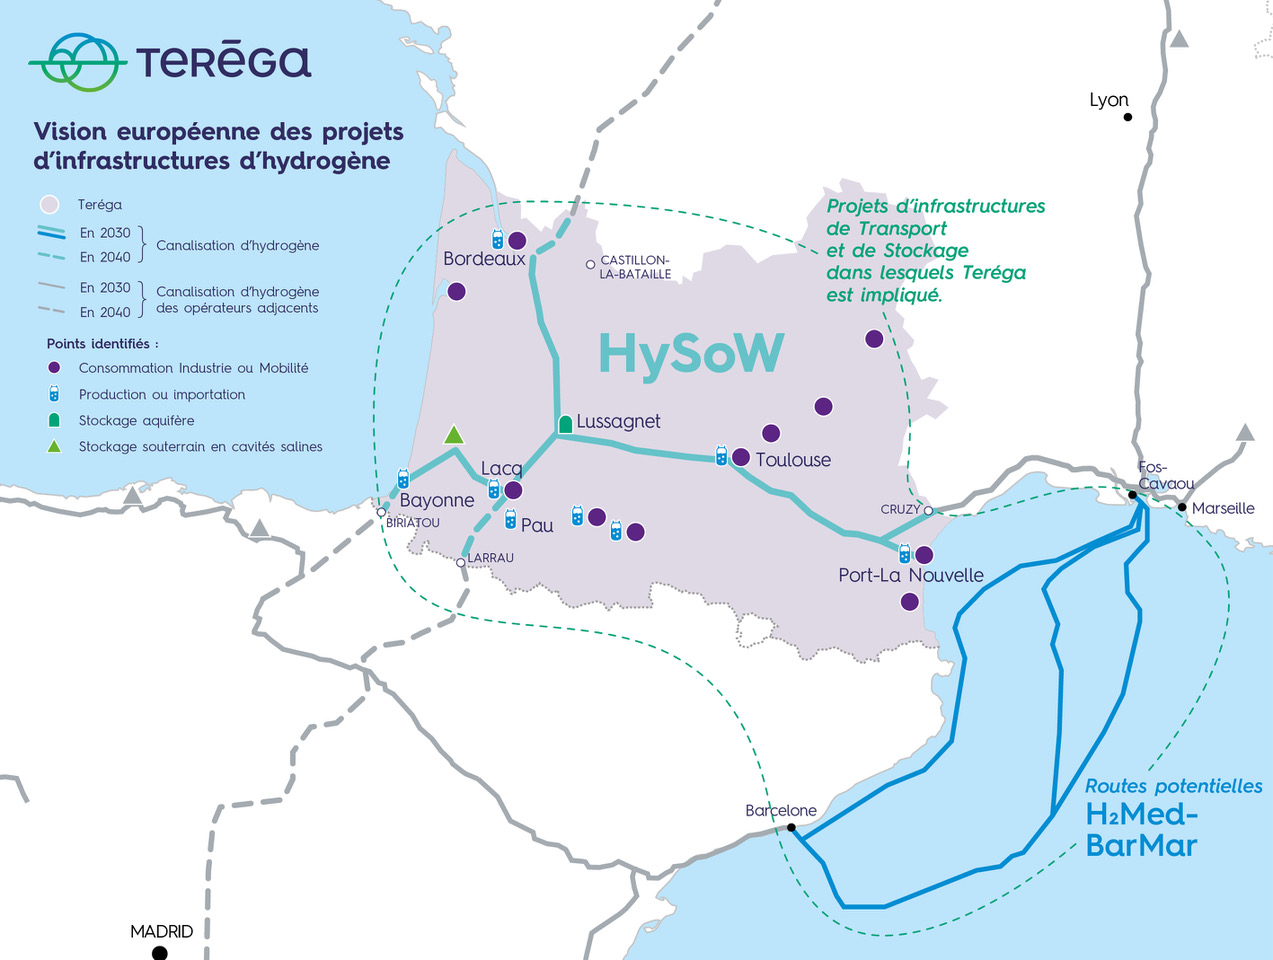 Vision européenne des projets d'infrastructures d'hydrogène